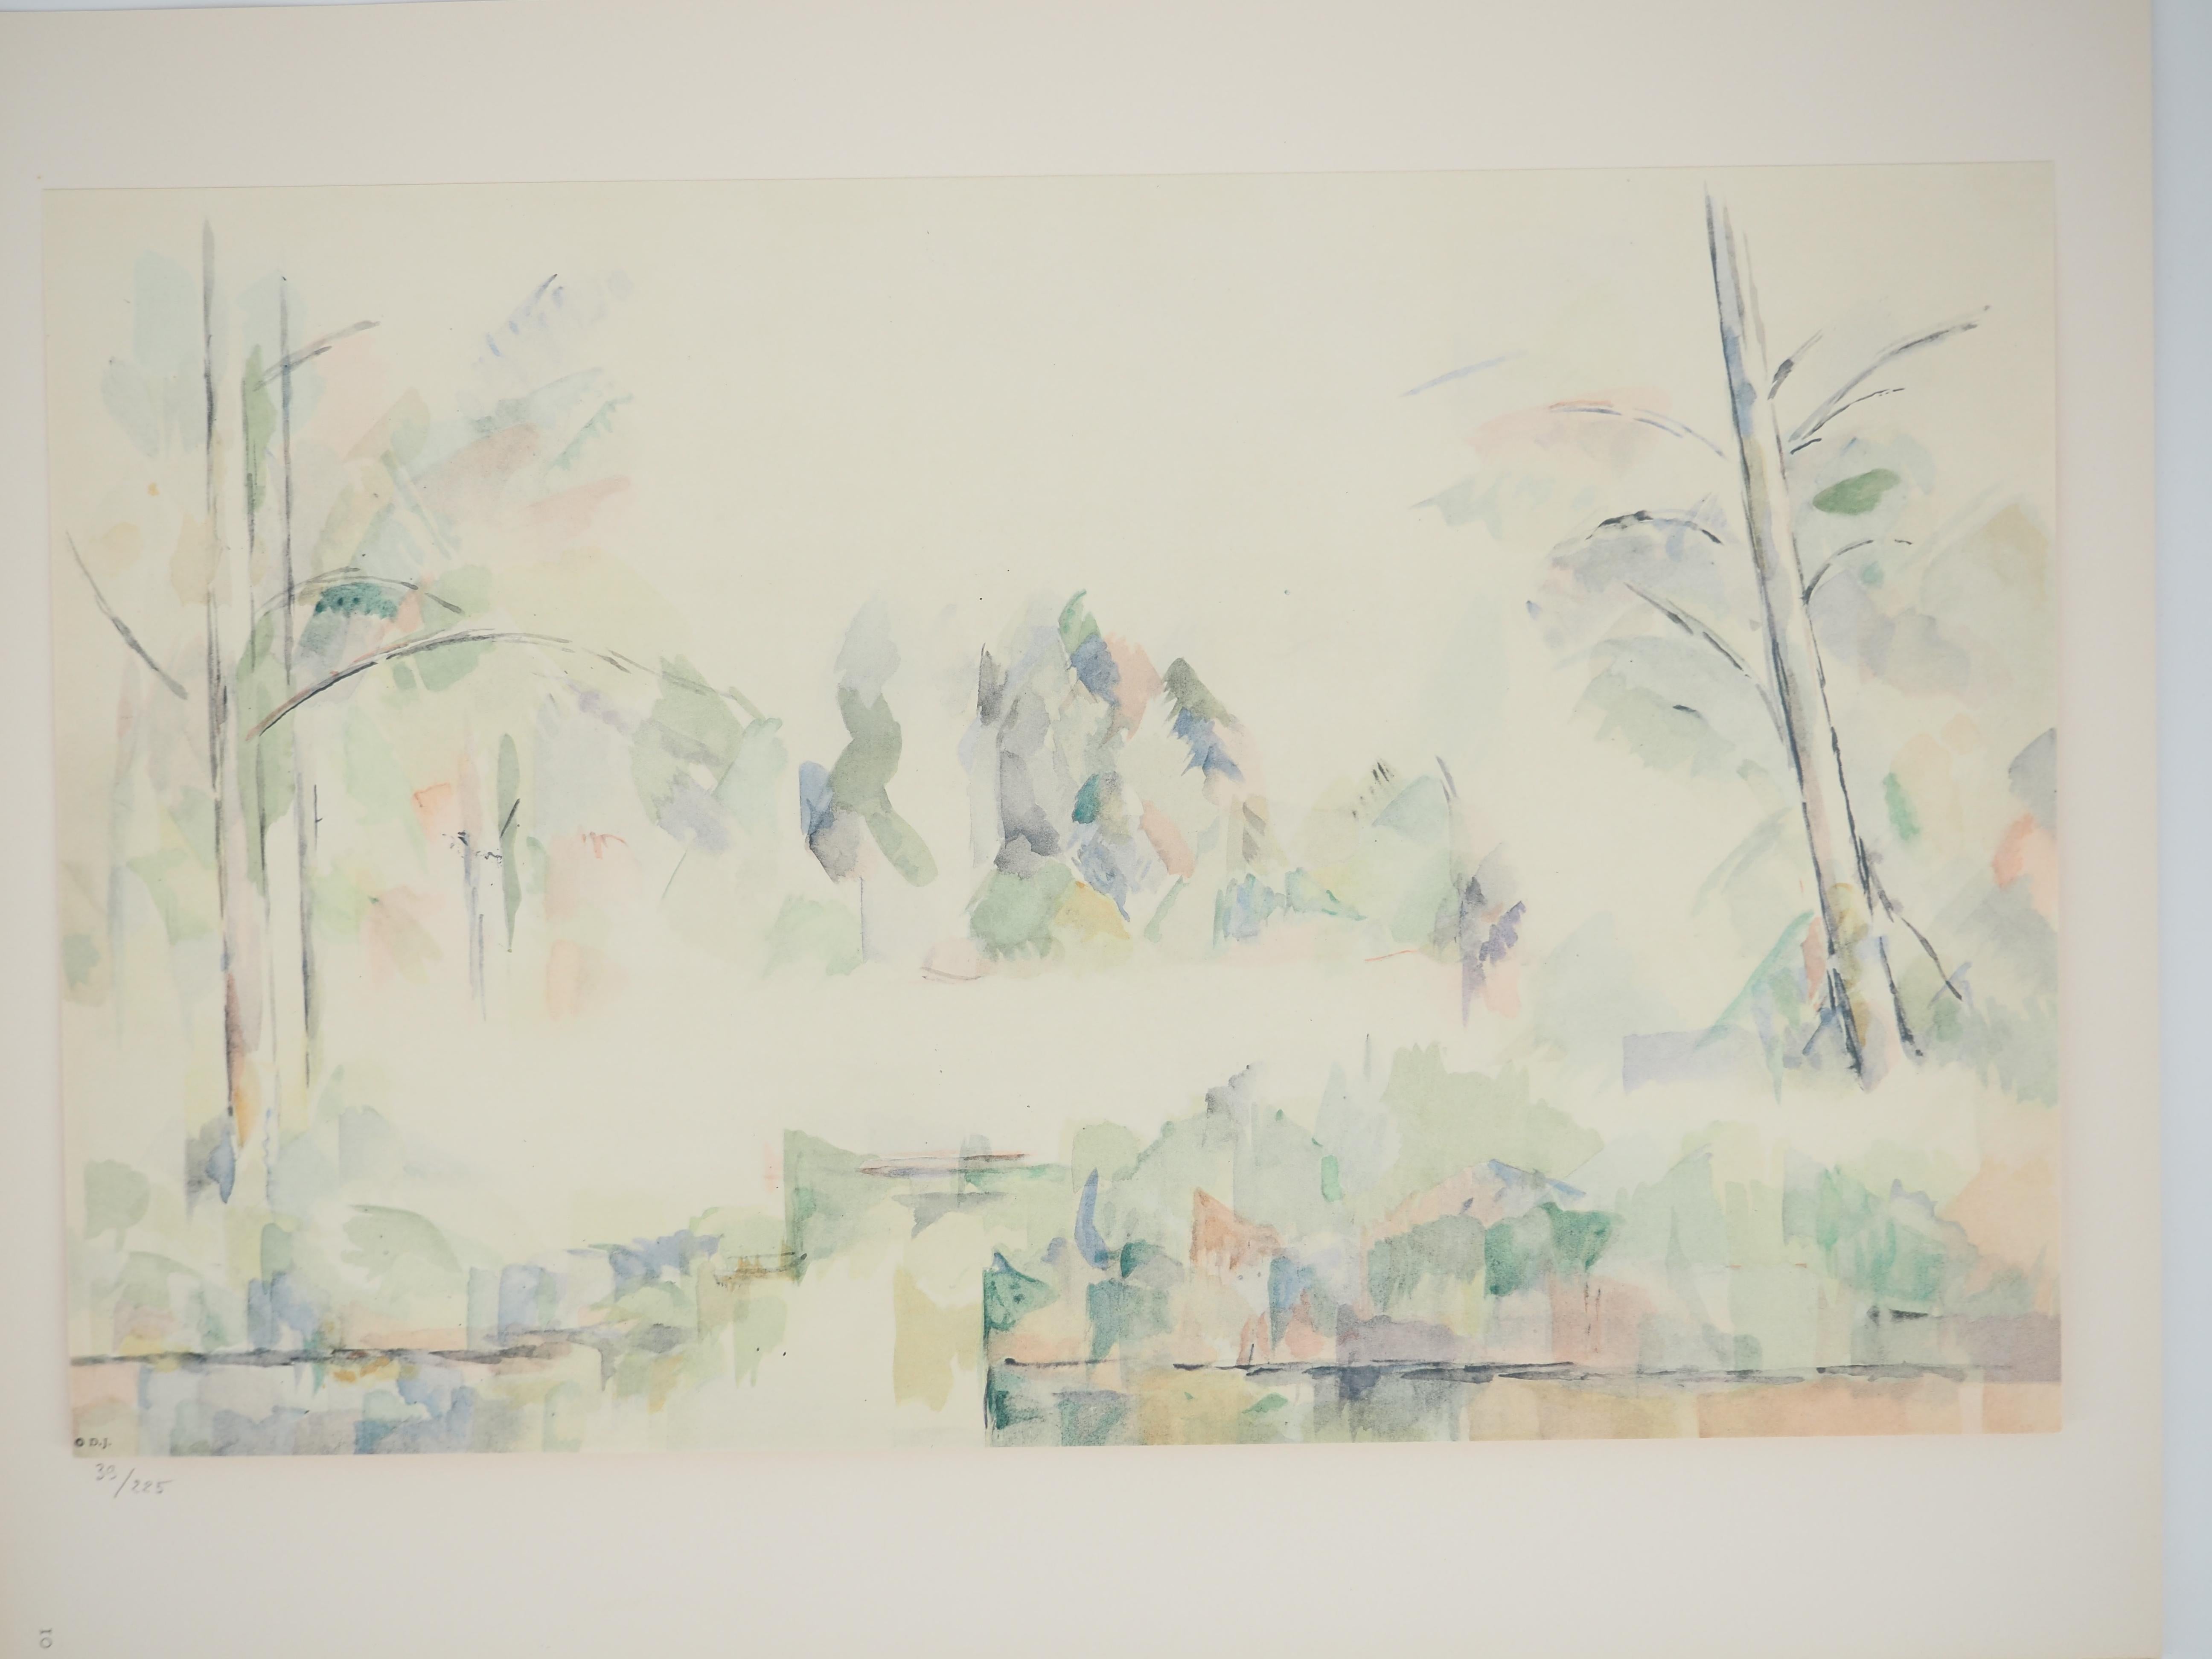 Vue du lac - Lithographie, 1971 - Print de Paul Cézanne